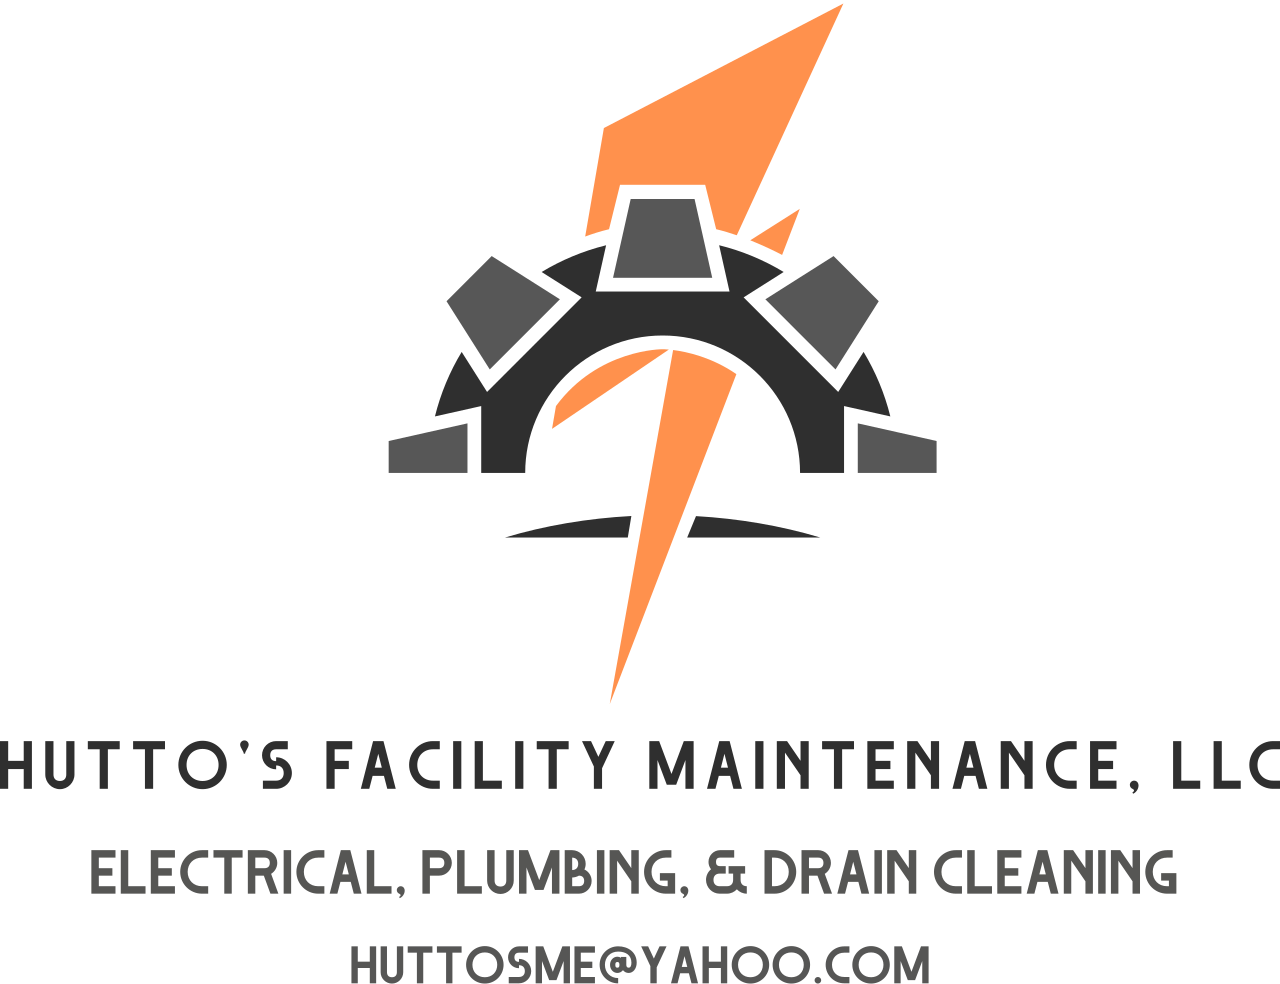 Hutto's Facility Maintenance, LLC's logo